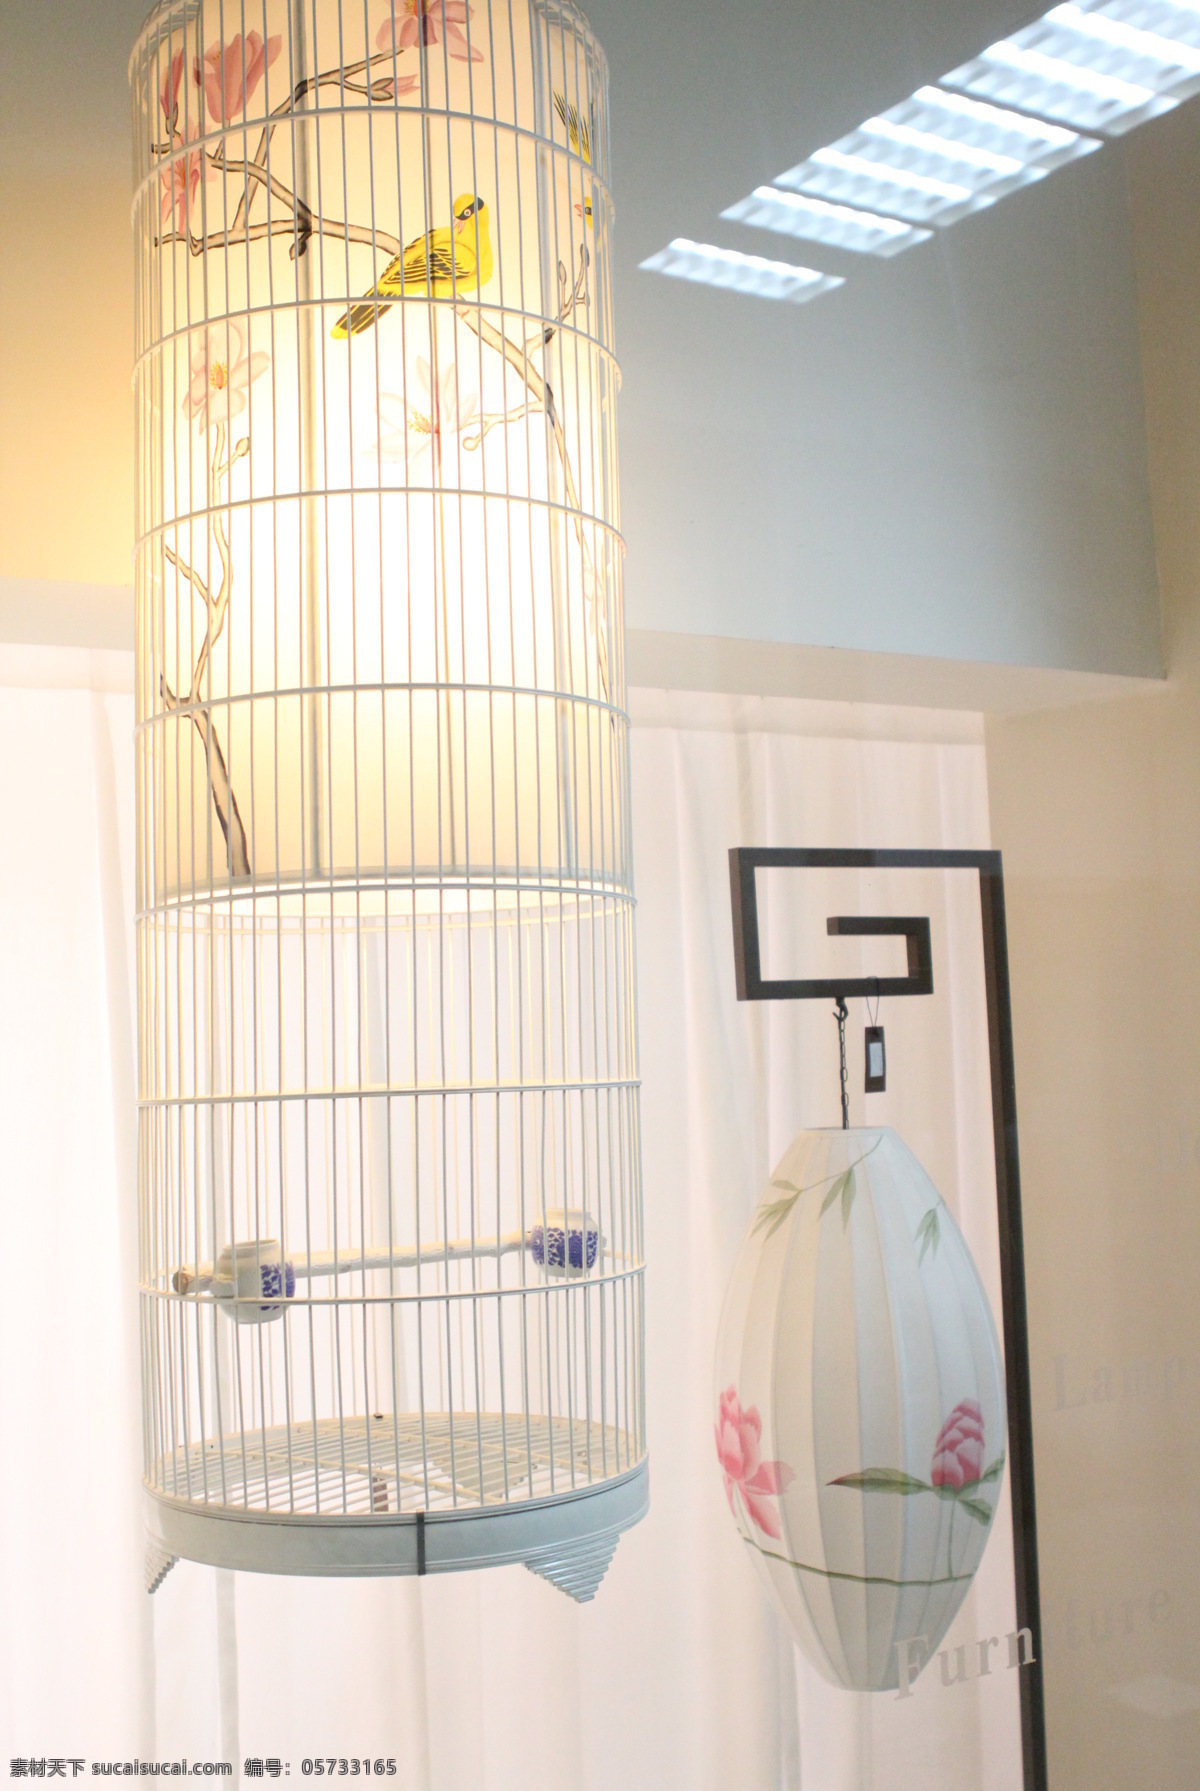 灯具 传统 传统文化 室内 文化艺术 灯具传统 798艺术区 橱窗展品 传统灯具 家居装饰素材 展示设计